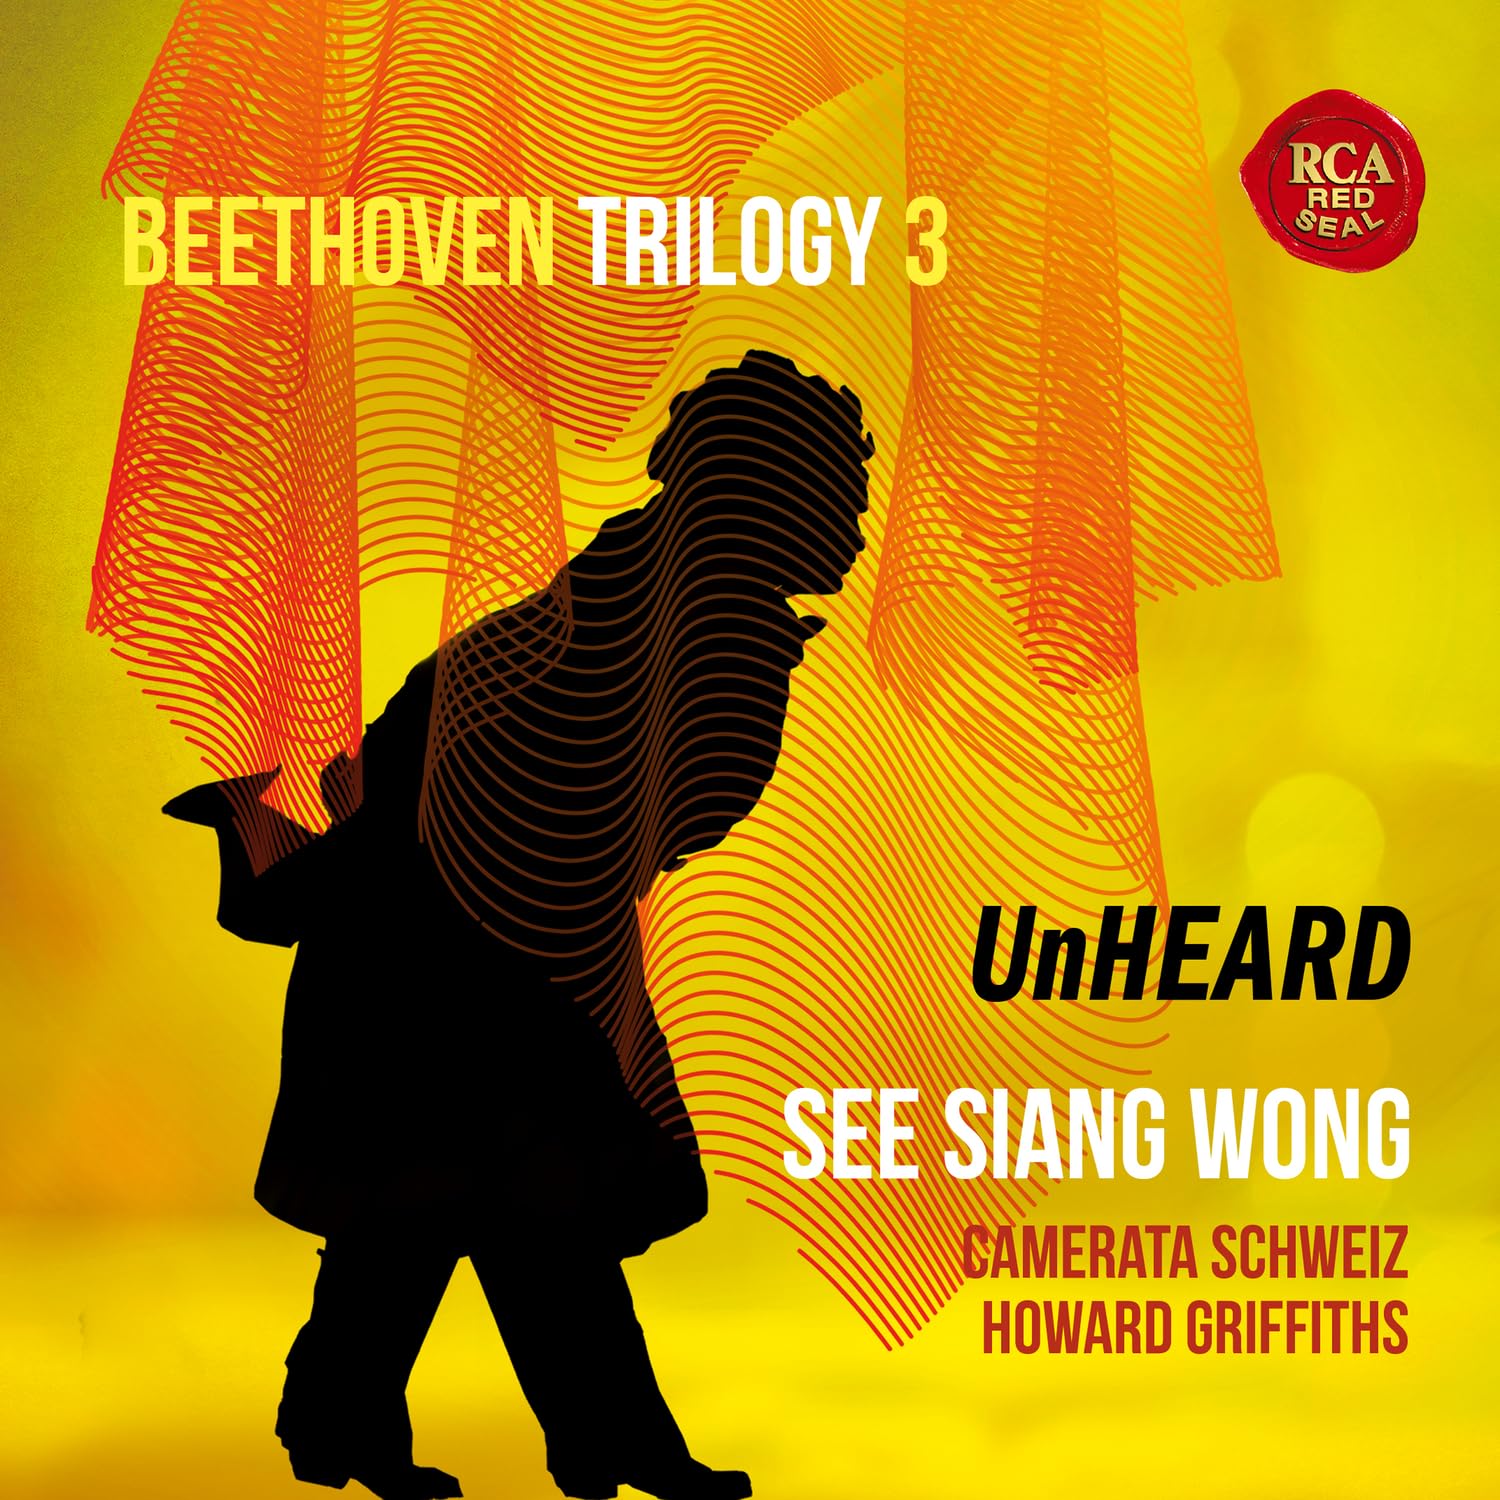 Beethoven Trilogy 3: Unheard | See Siang Wong